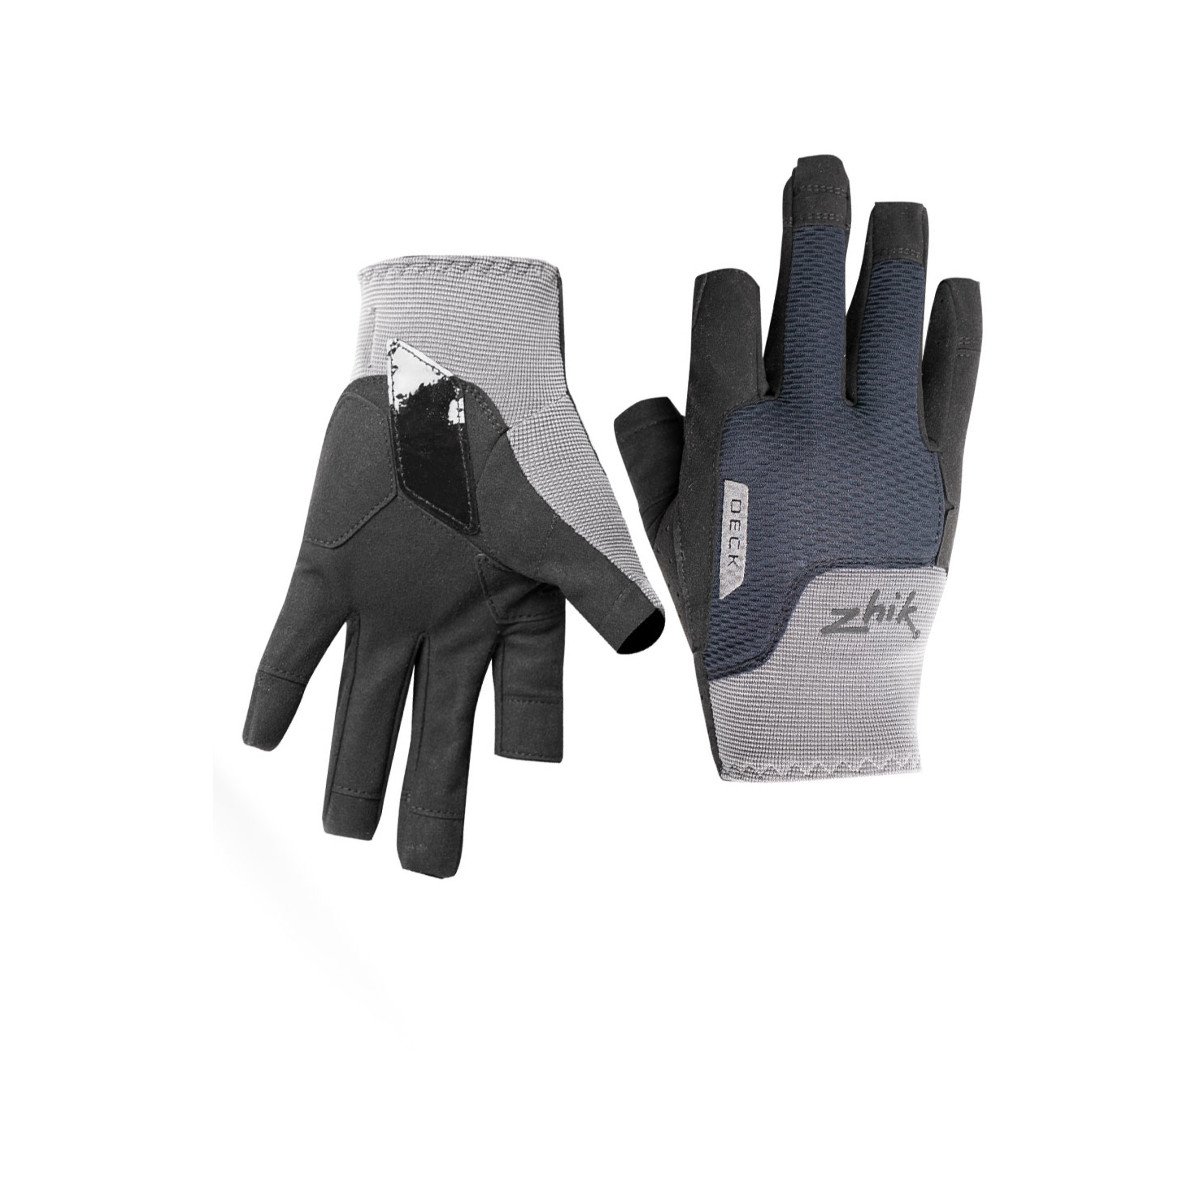 Zhik Deck gants de voile à doigts longs, unisexe - gris, taille S